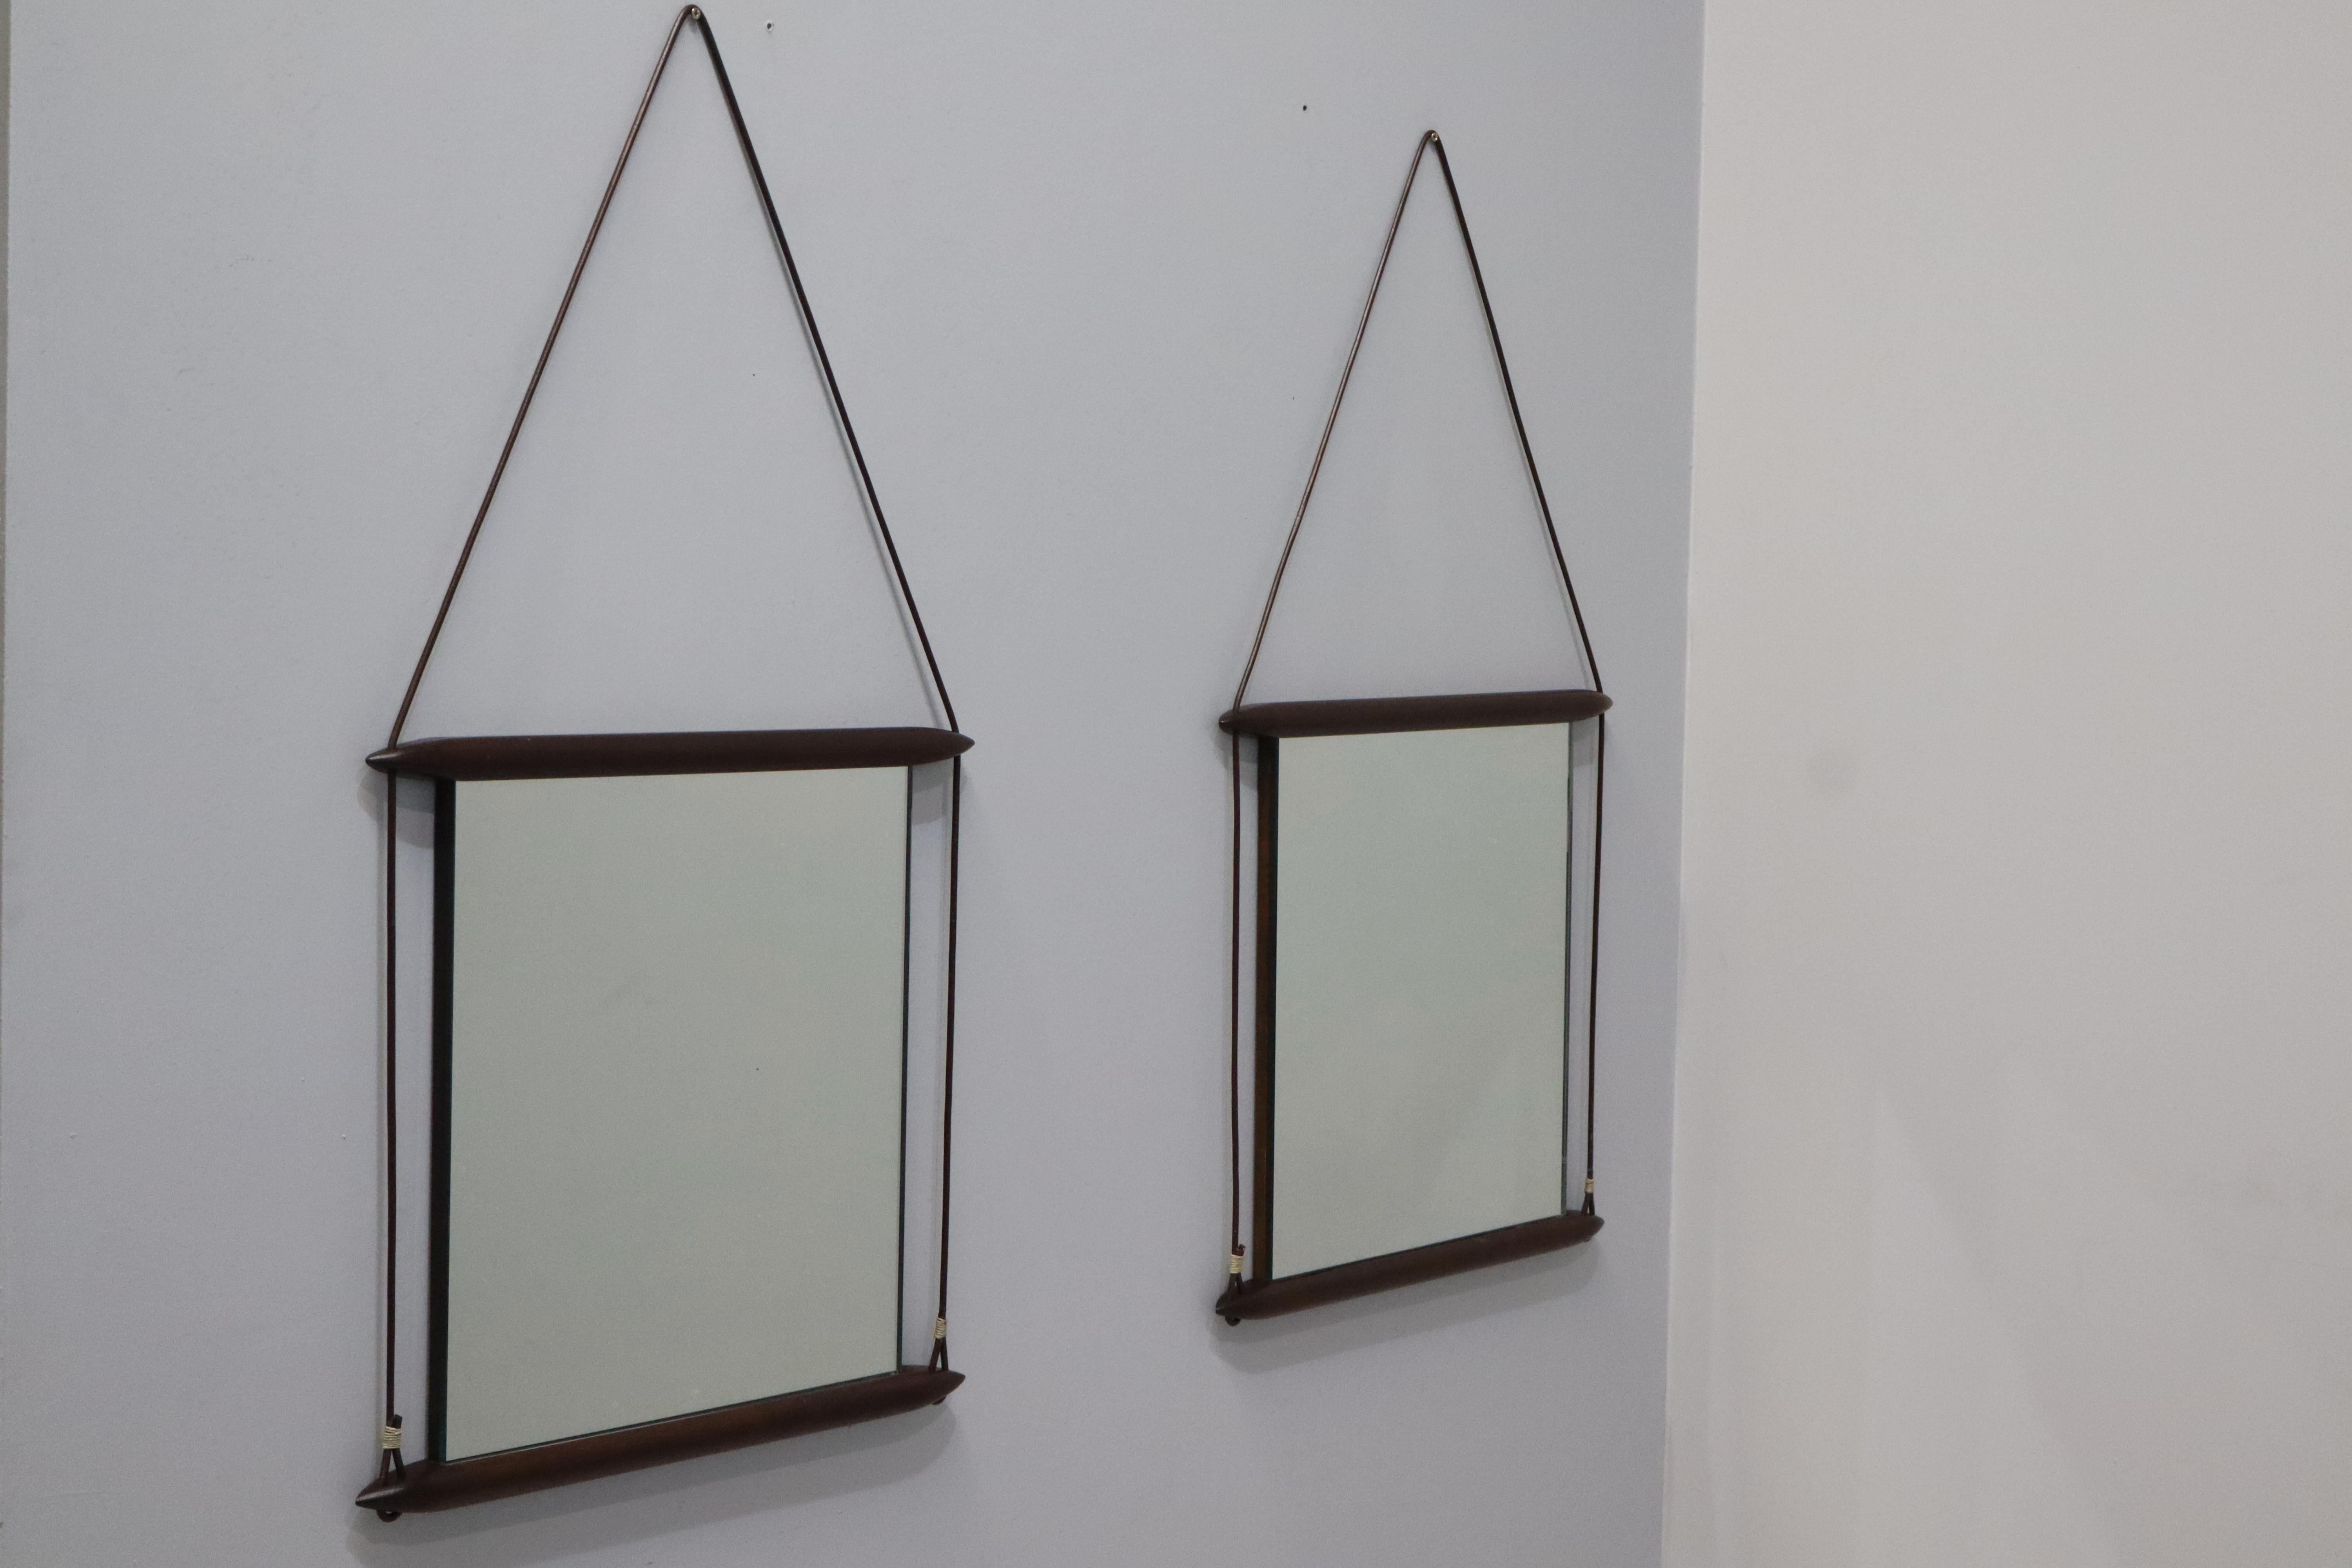 Wandspiegel, entworfen von Ico Parisi in den späten 1950er Jahren und hergestellt von Mobili Italiani Moderni (MIM). 
Der Spiegelrahmen ist aus Holz und Wood Ribbon gefertigt. 
Die Rückseite des Spiegels ist ebenfalls aus Holz und trägt die